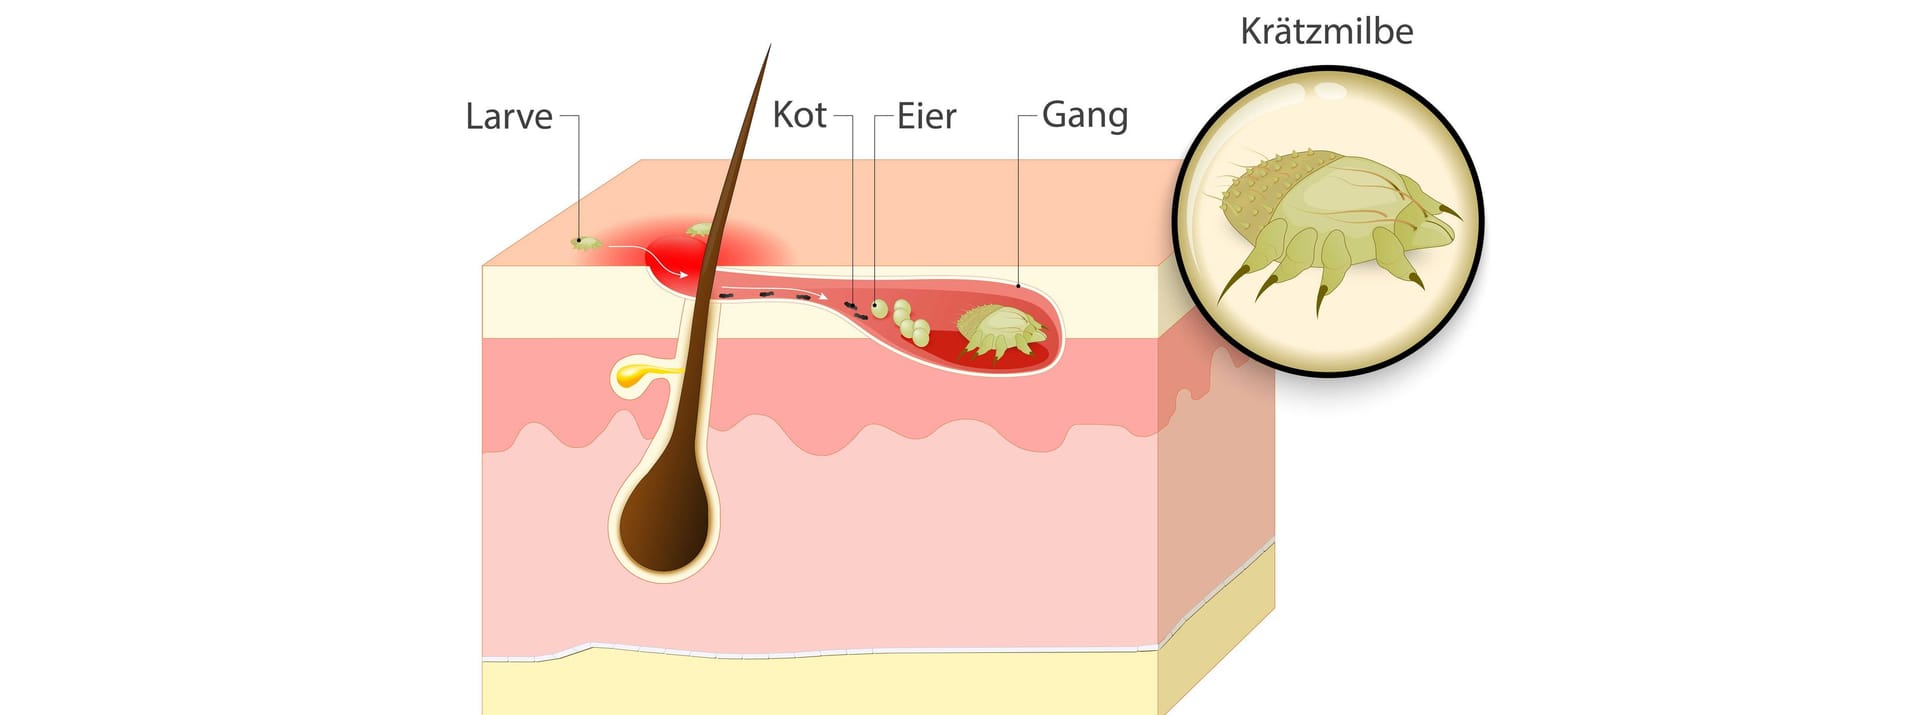 Illustration eines Krätzebefalls der Haut